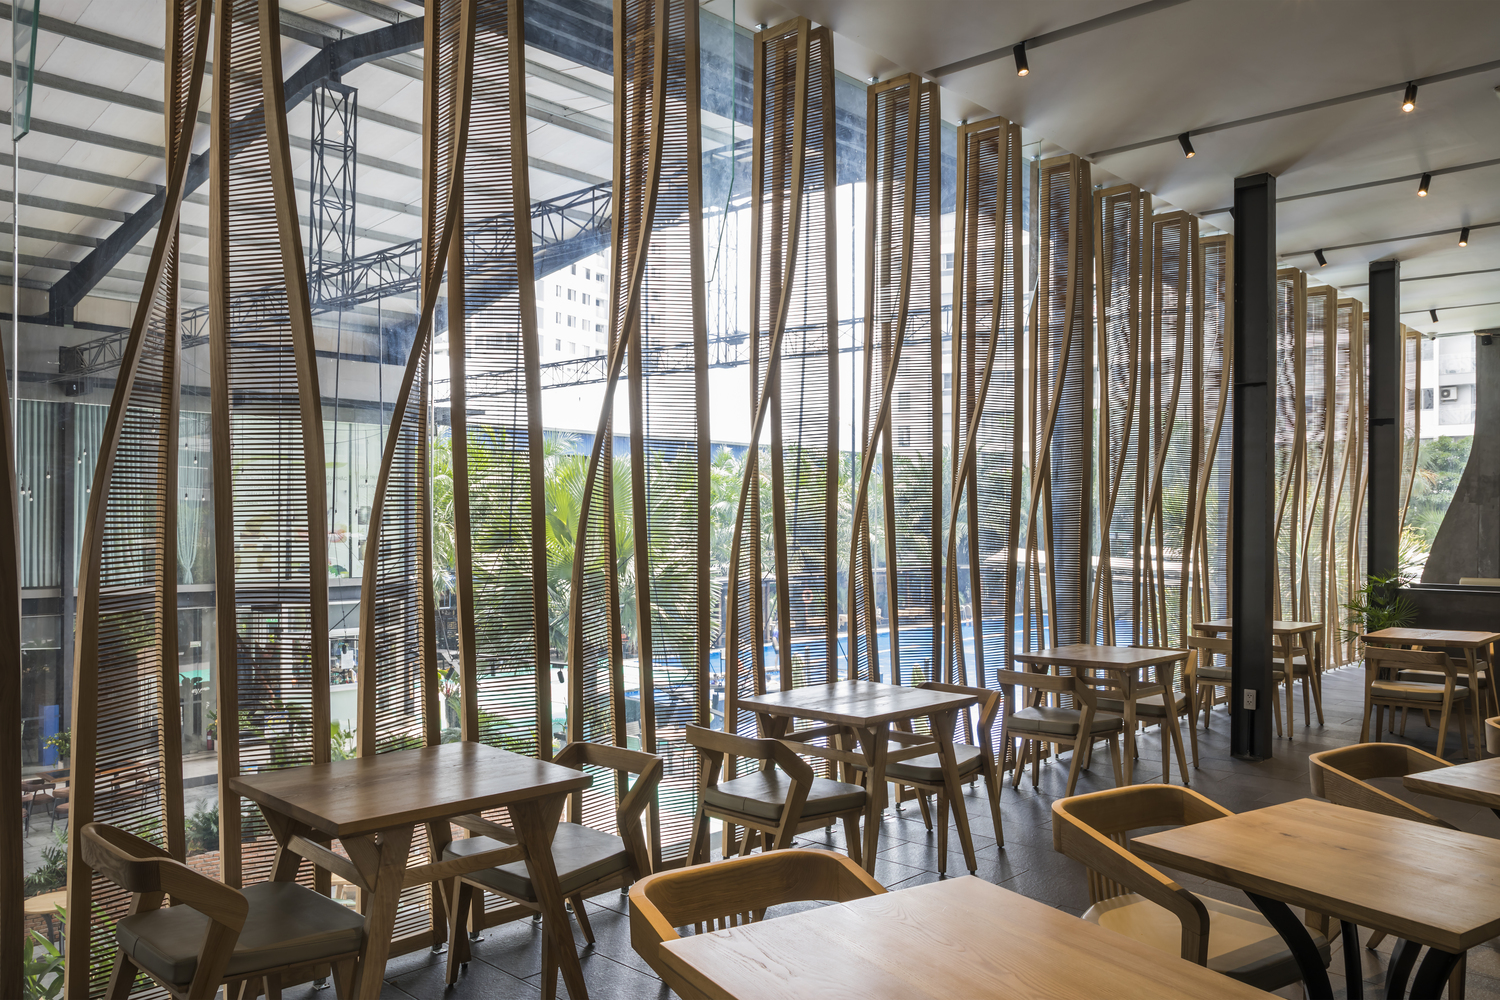 Phong cách thiết kế nội thất nhà hàng mang âm hưởng đồng quê rất được ưa chuộng ở Việt Nam